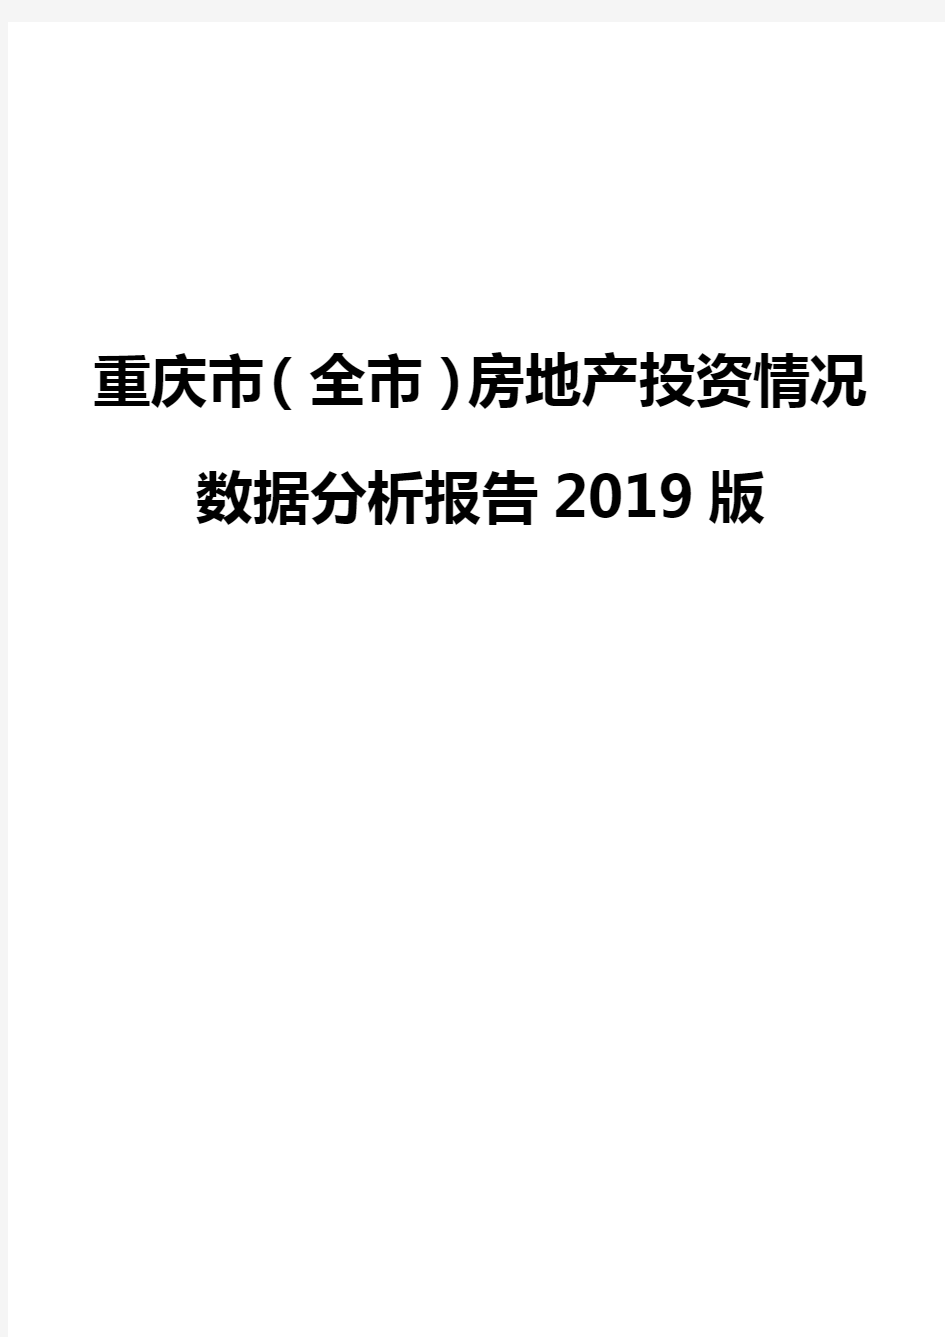 重庆市(全市)房地产投资情况数据分析报告2019版